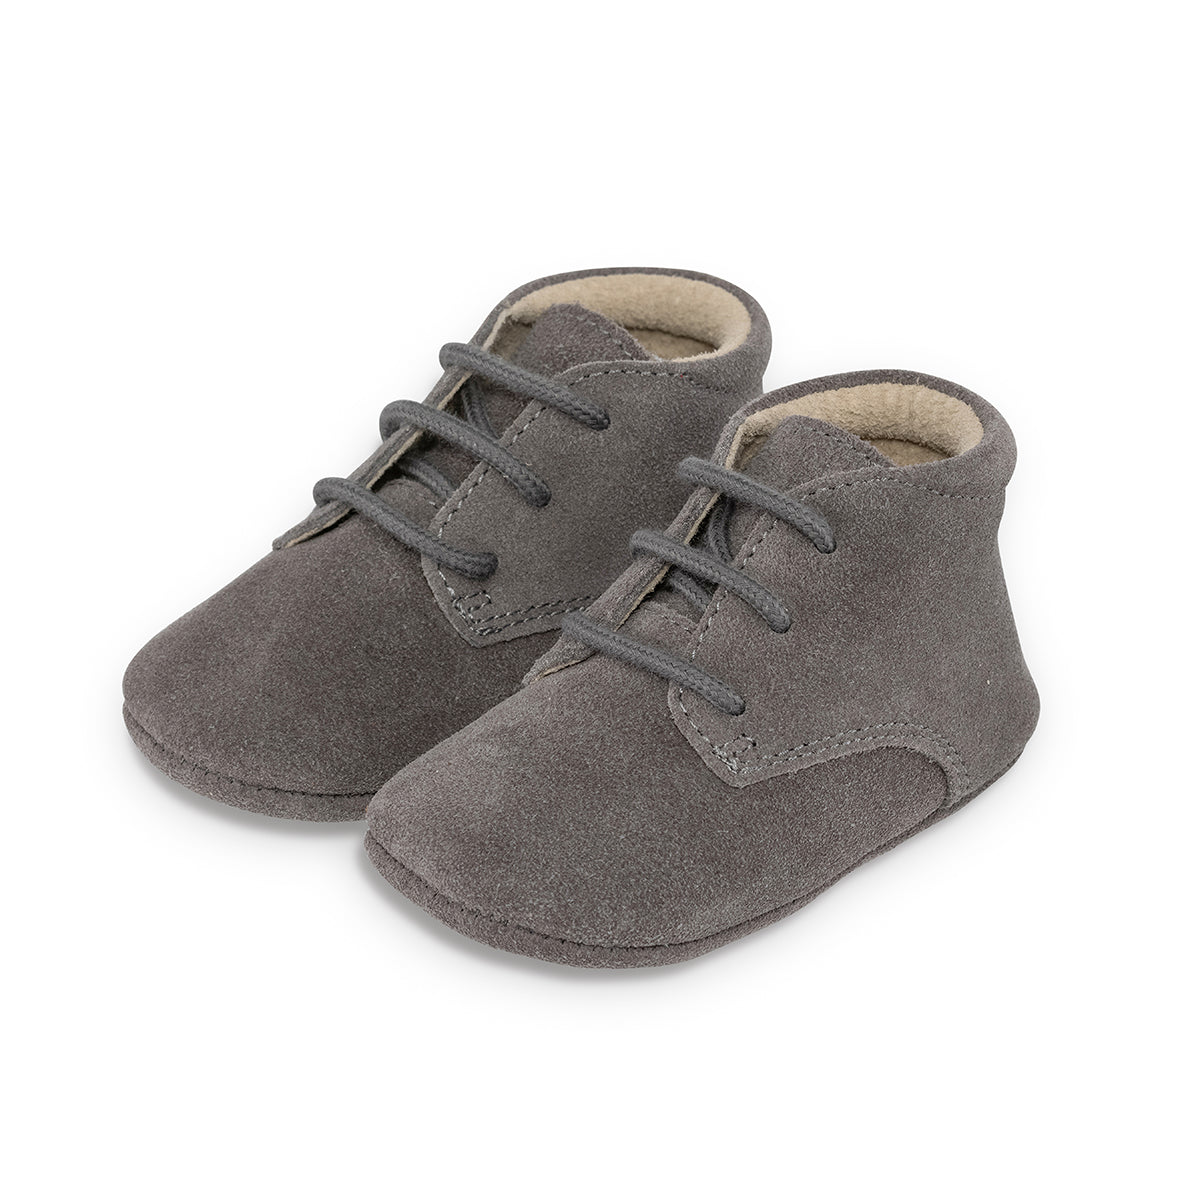 Op zoek naar stijlvolle (eerste) schoentjes van goede kwaliteit? Dat zijn de Mavies classic boots grey suede. Deze babyschoenen hebben een boots model en zijn van grijskleurig suèdeleer. VanZus